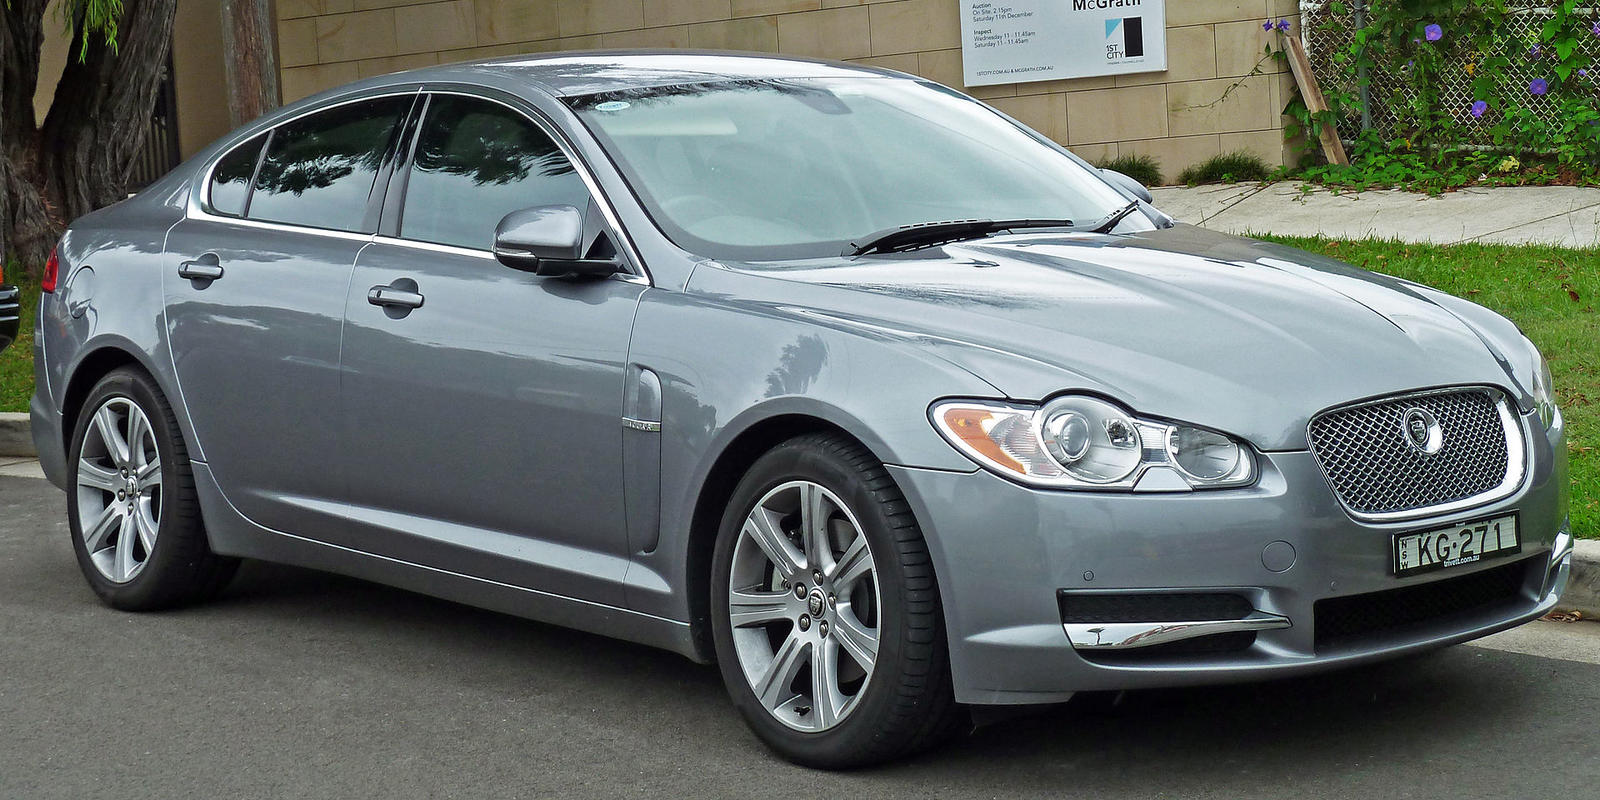 23 2009-2010_Jaguar_XF_(X250_MY10)_Luxury_sedan_(2011-01-13)